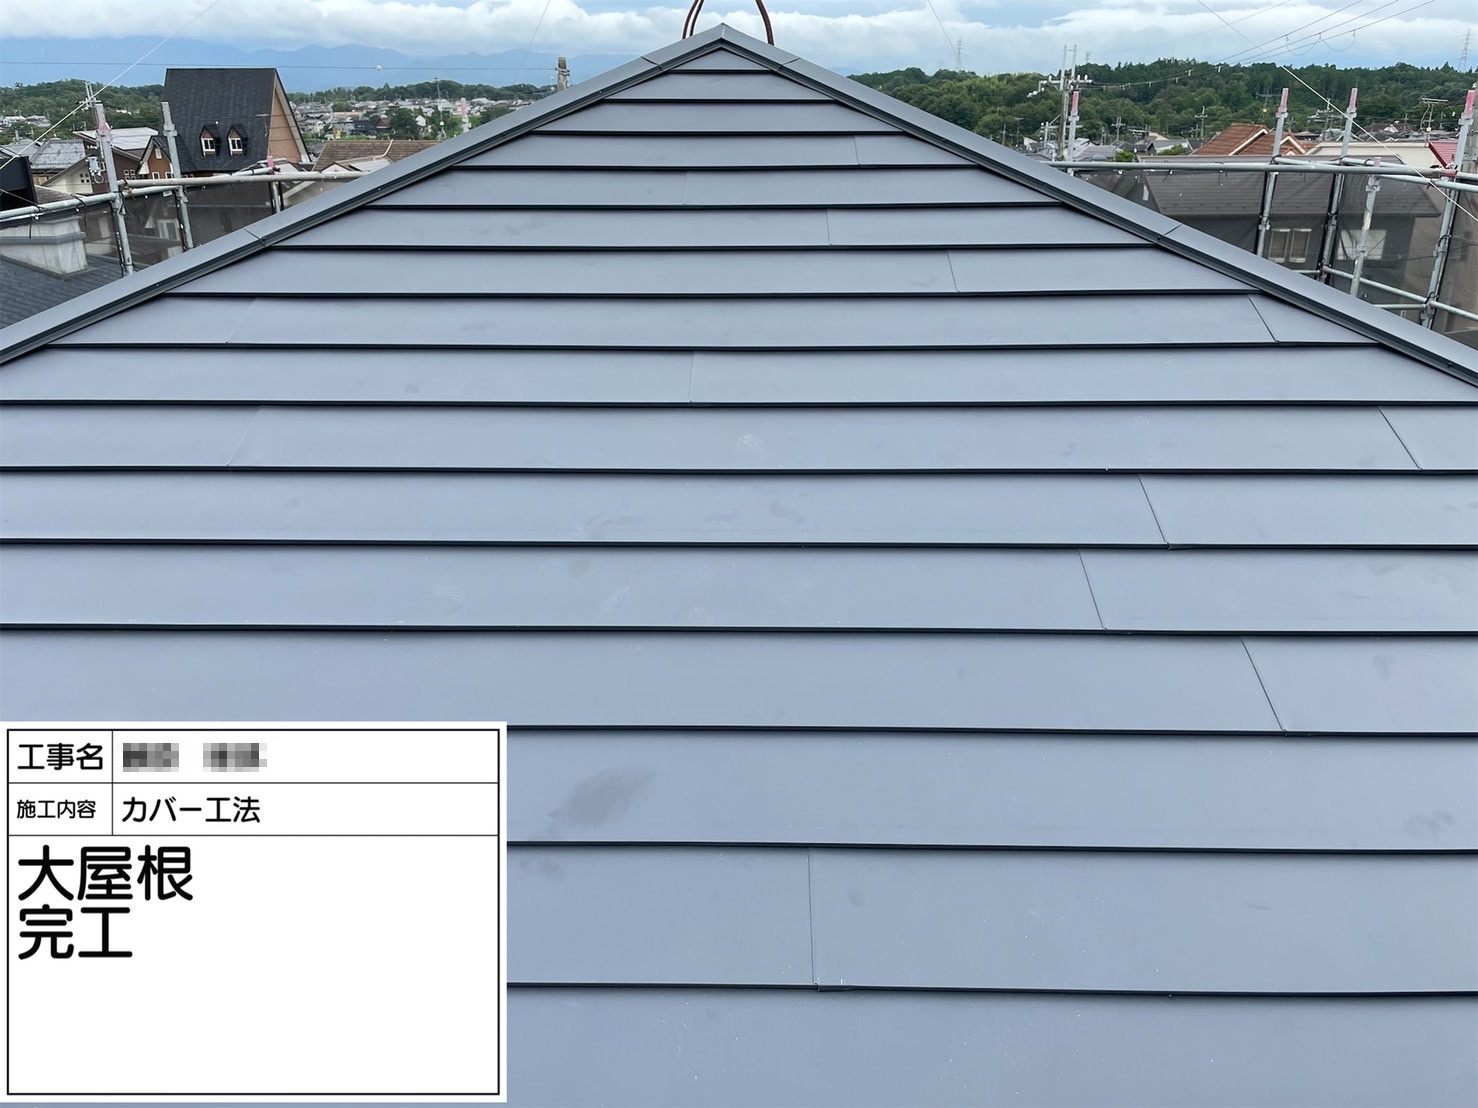 大阪府堺市にて屋根修理〈スレート屋根カバー工法〉 施工後